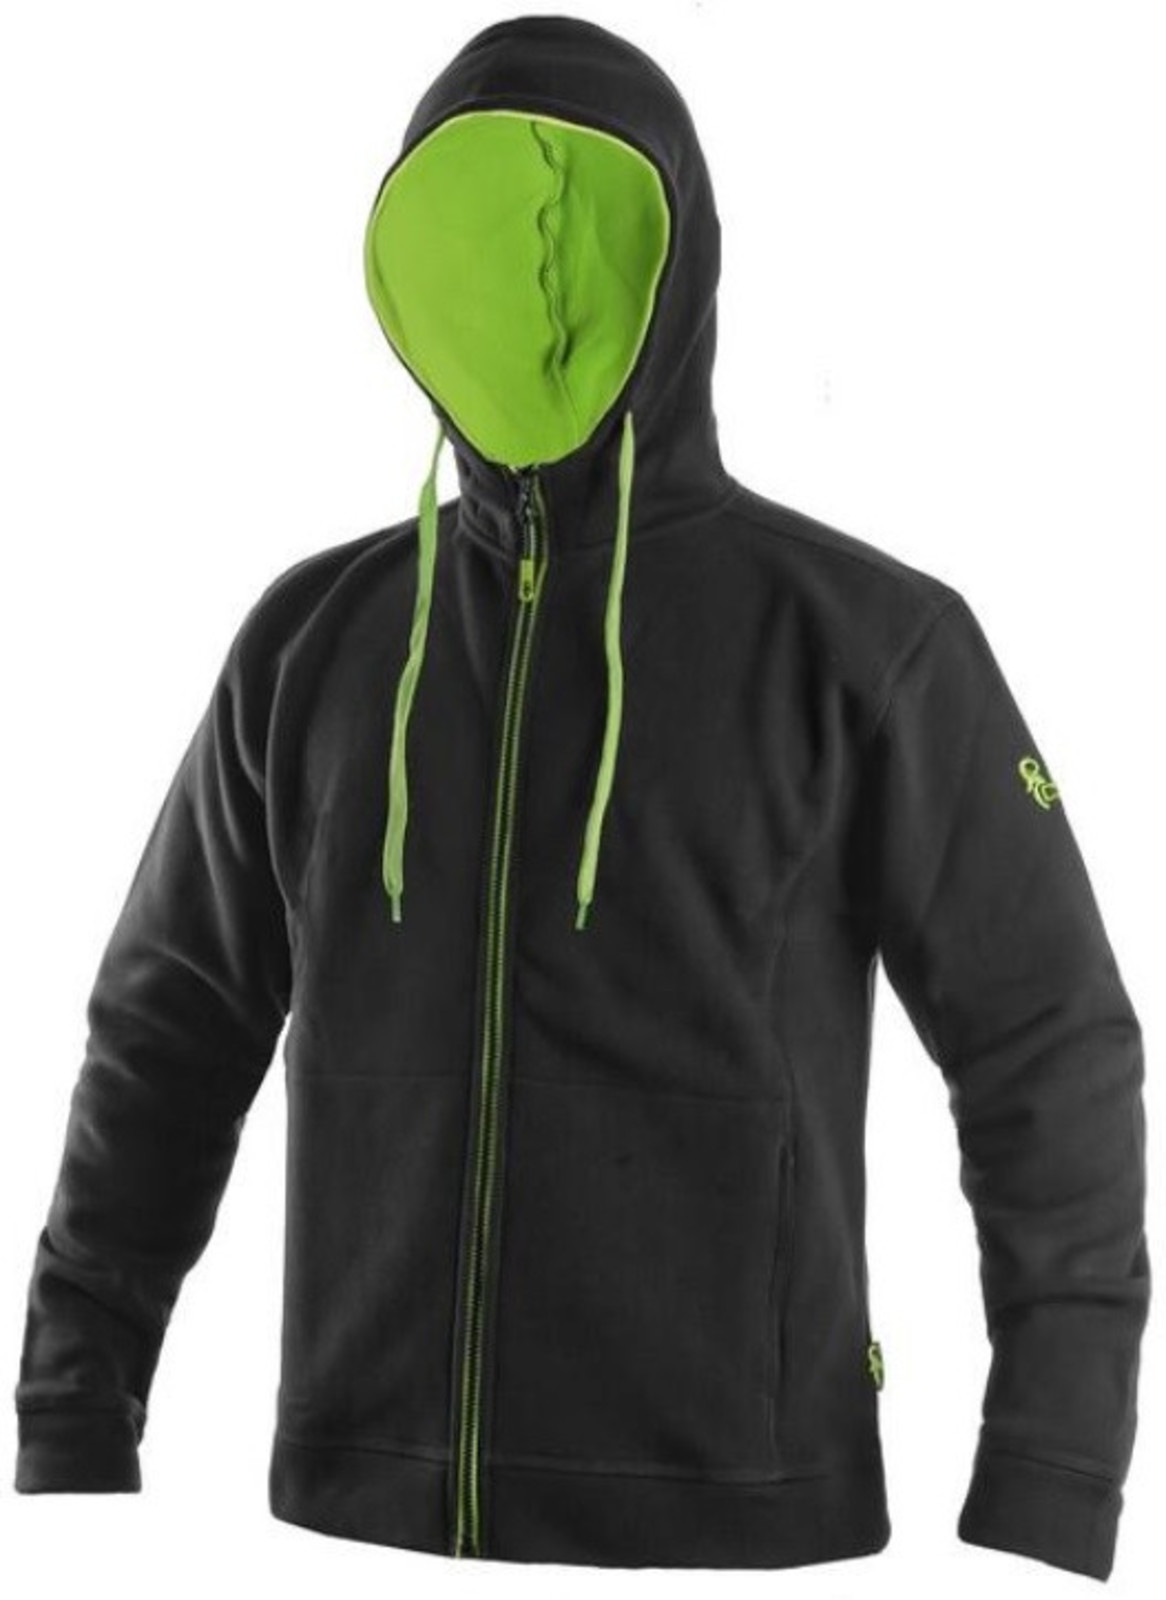 Mikina na zips s kapucňou CXS Harrison - veľkosť: 3XL, farba: čierna/zelená